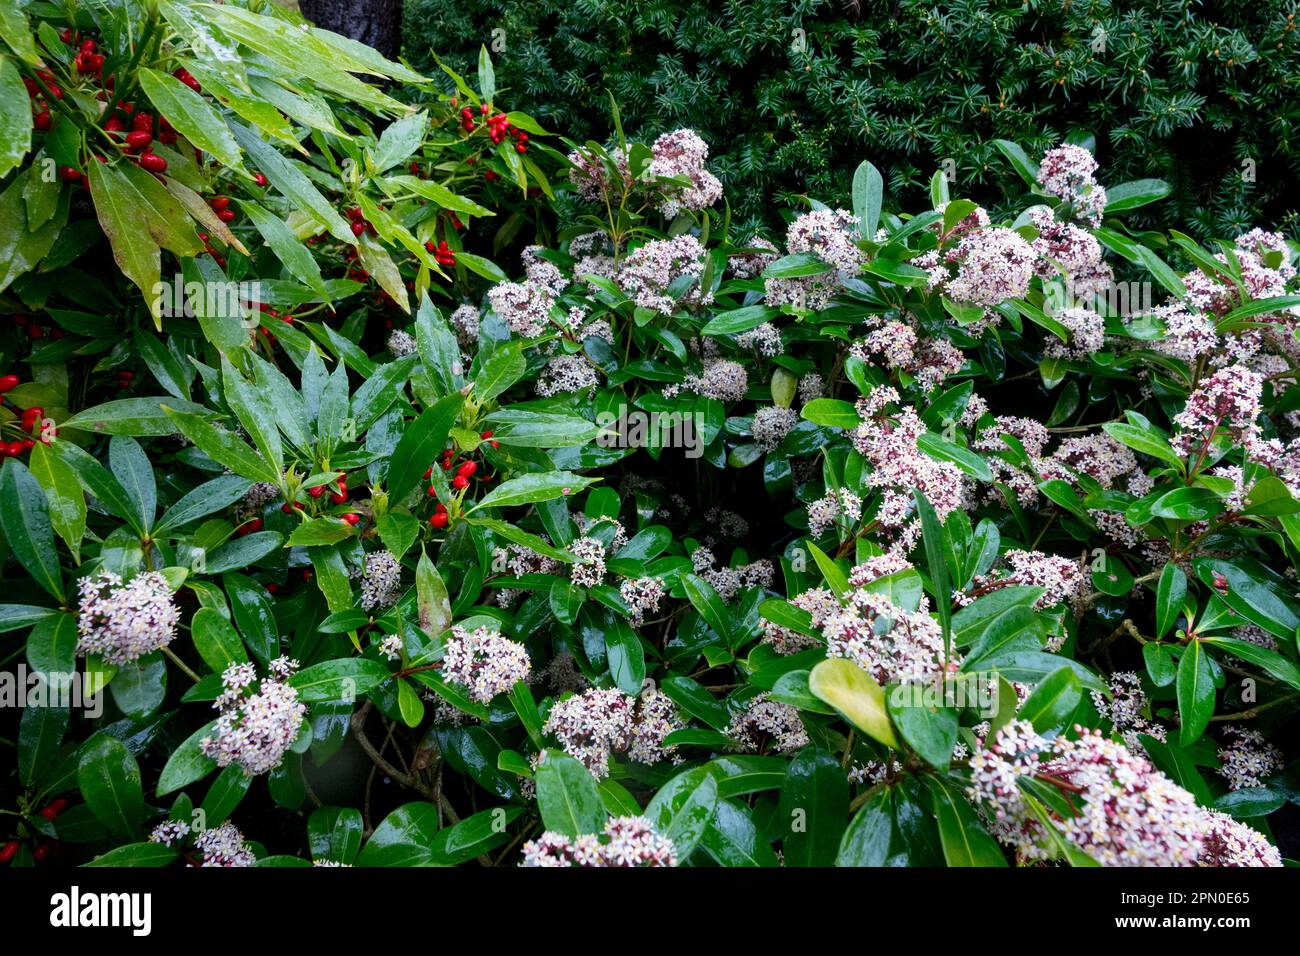 Skimmia, Aucuba, Garden, Flowering, Shrub Stock Photo